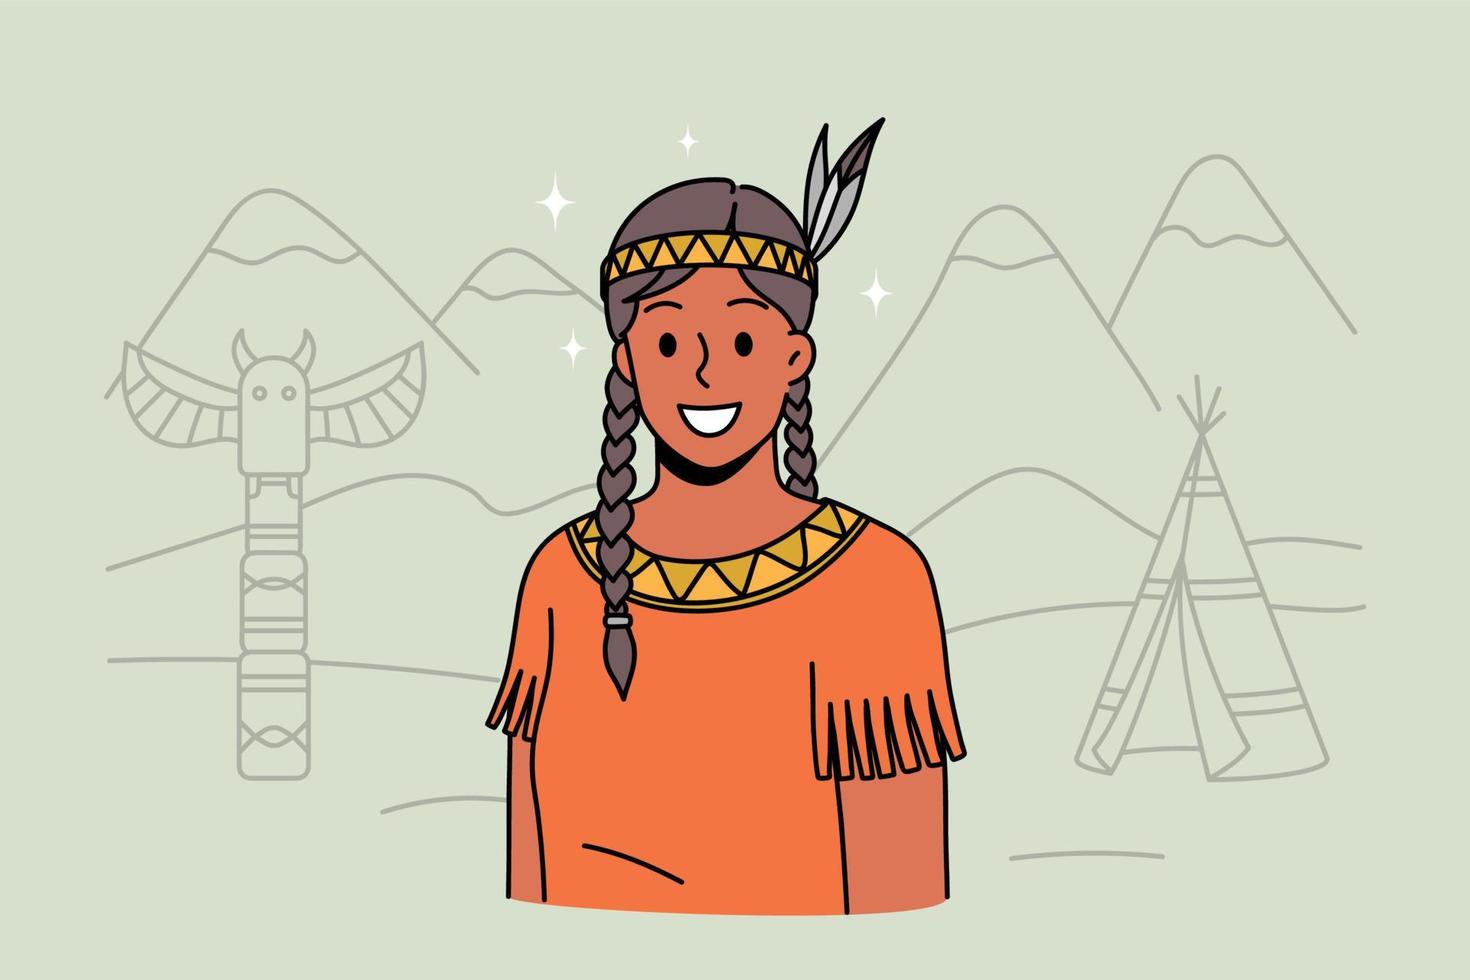 mulher indiana nativa americana em roupas tradicionais nacionais. sorridente jovem indígena com penas no cabelo usam roupas étnicas. cultura e diversidade. ilustração vetorial plana. vetor